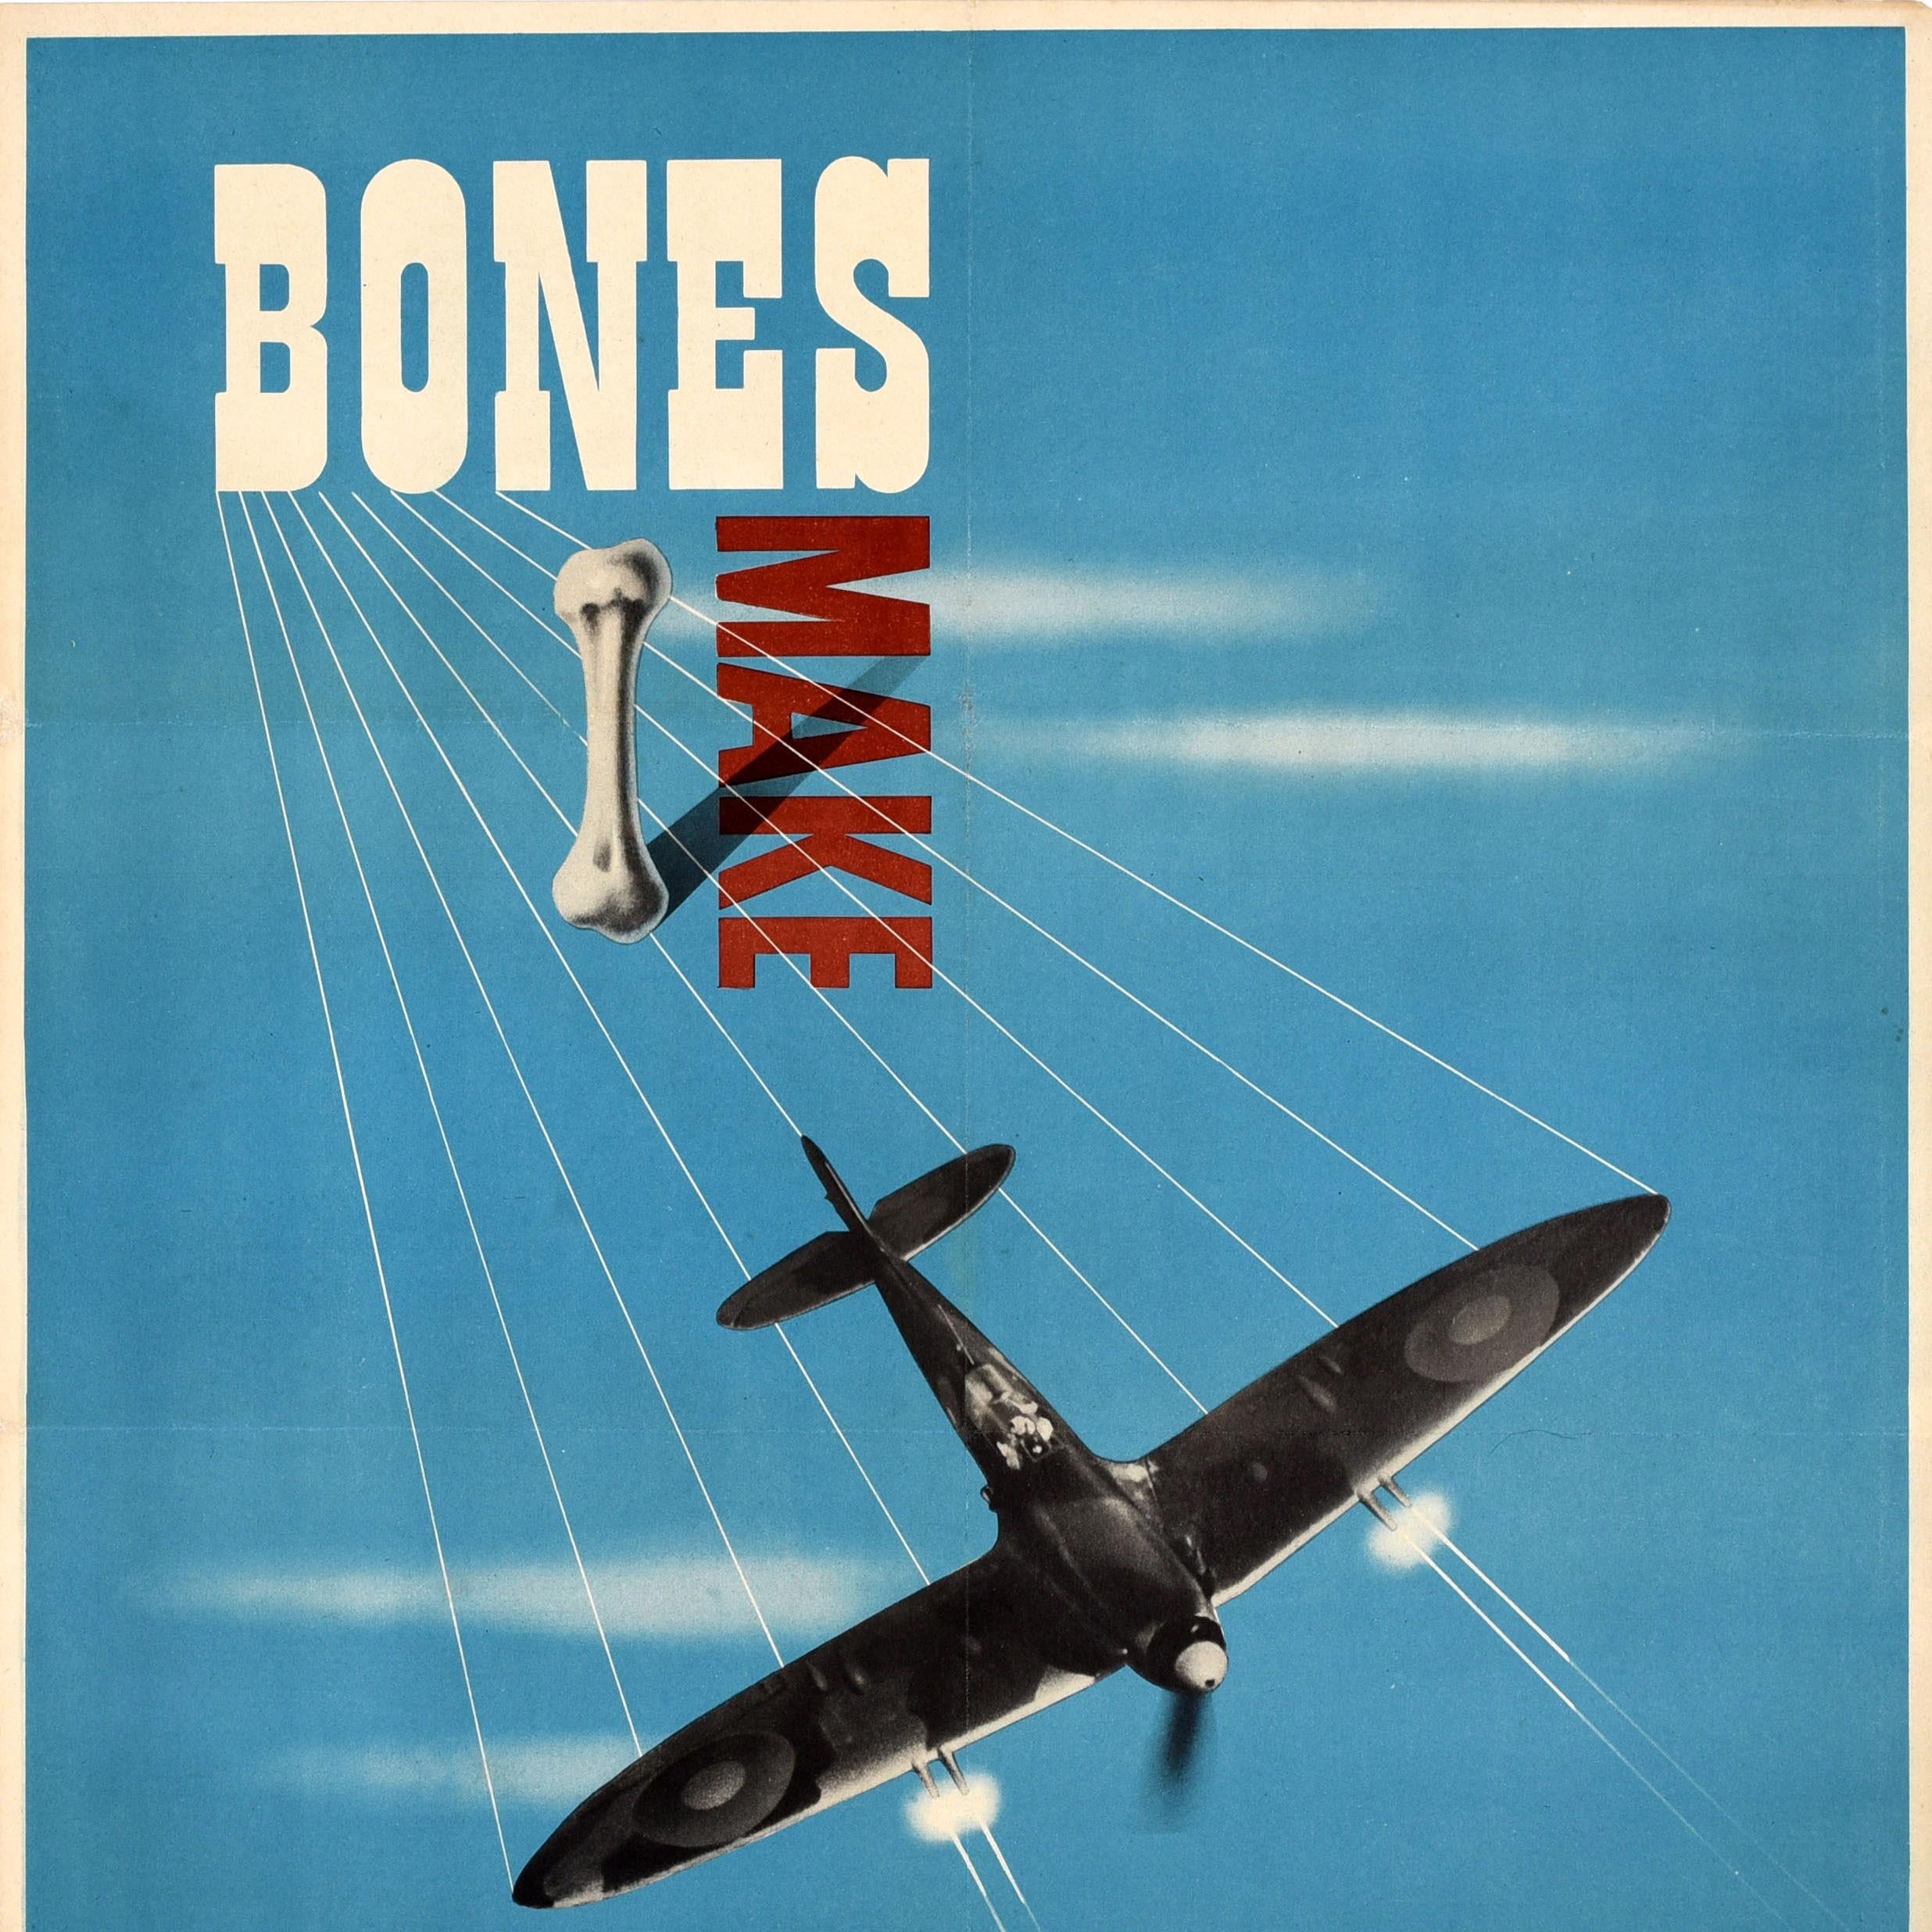 Original Vintage War Home Front Recycling Poster Bones Make Explosives WWII - Modern Print by Reginald Mount